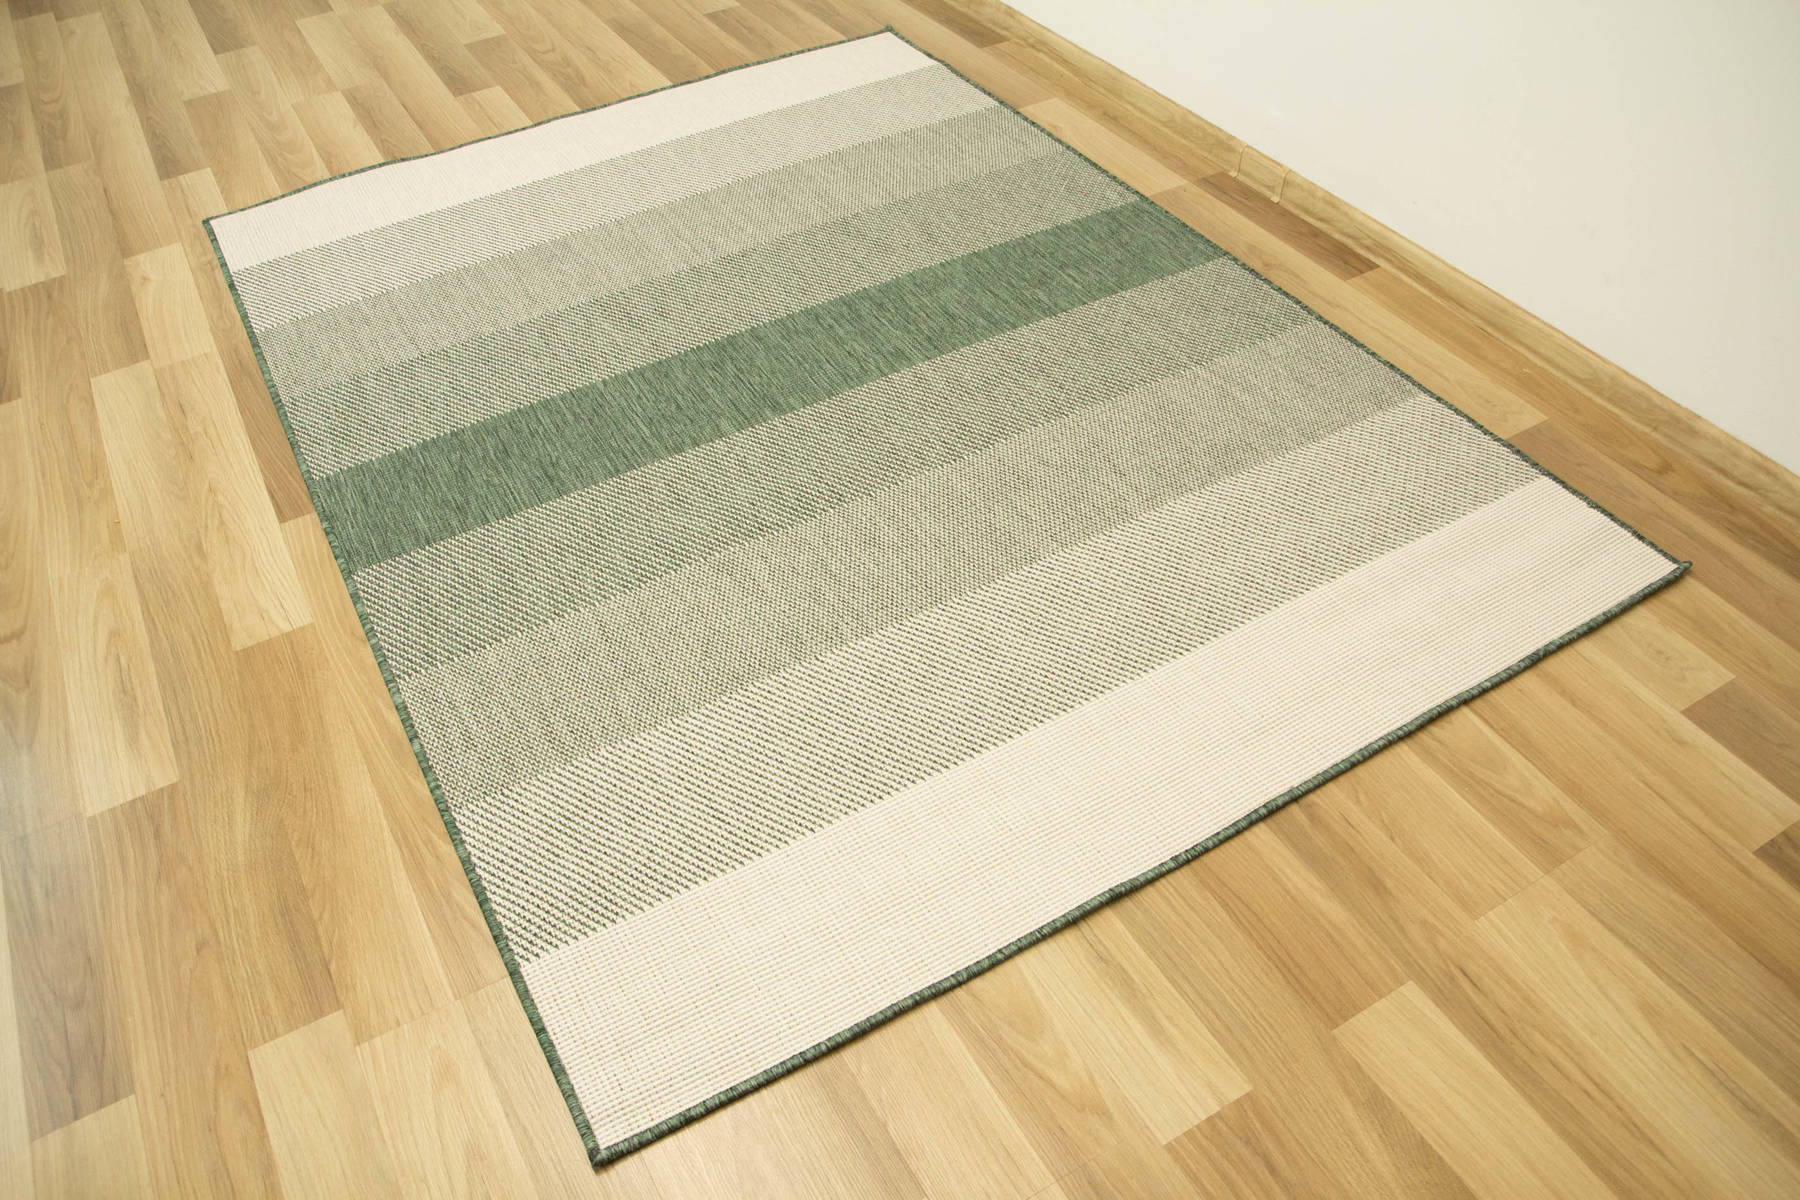 Šnúrkový obojstranný koberec Brussels 205248/10510 zelený